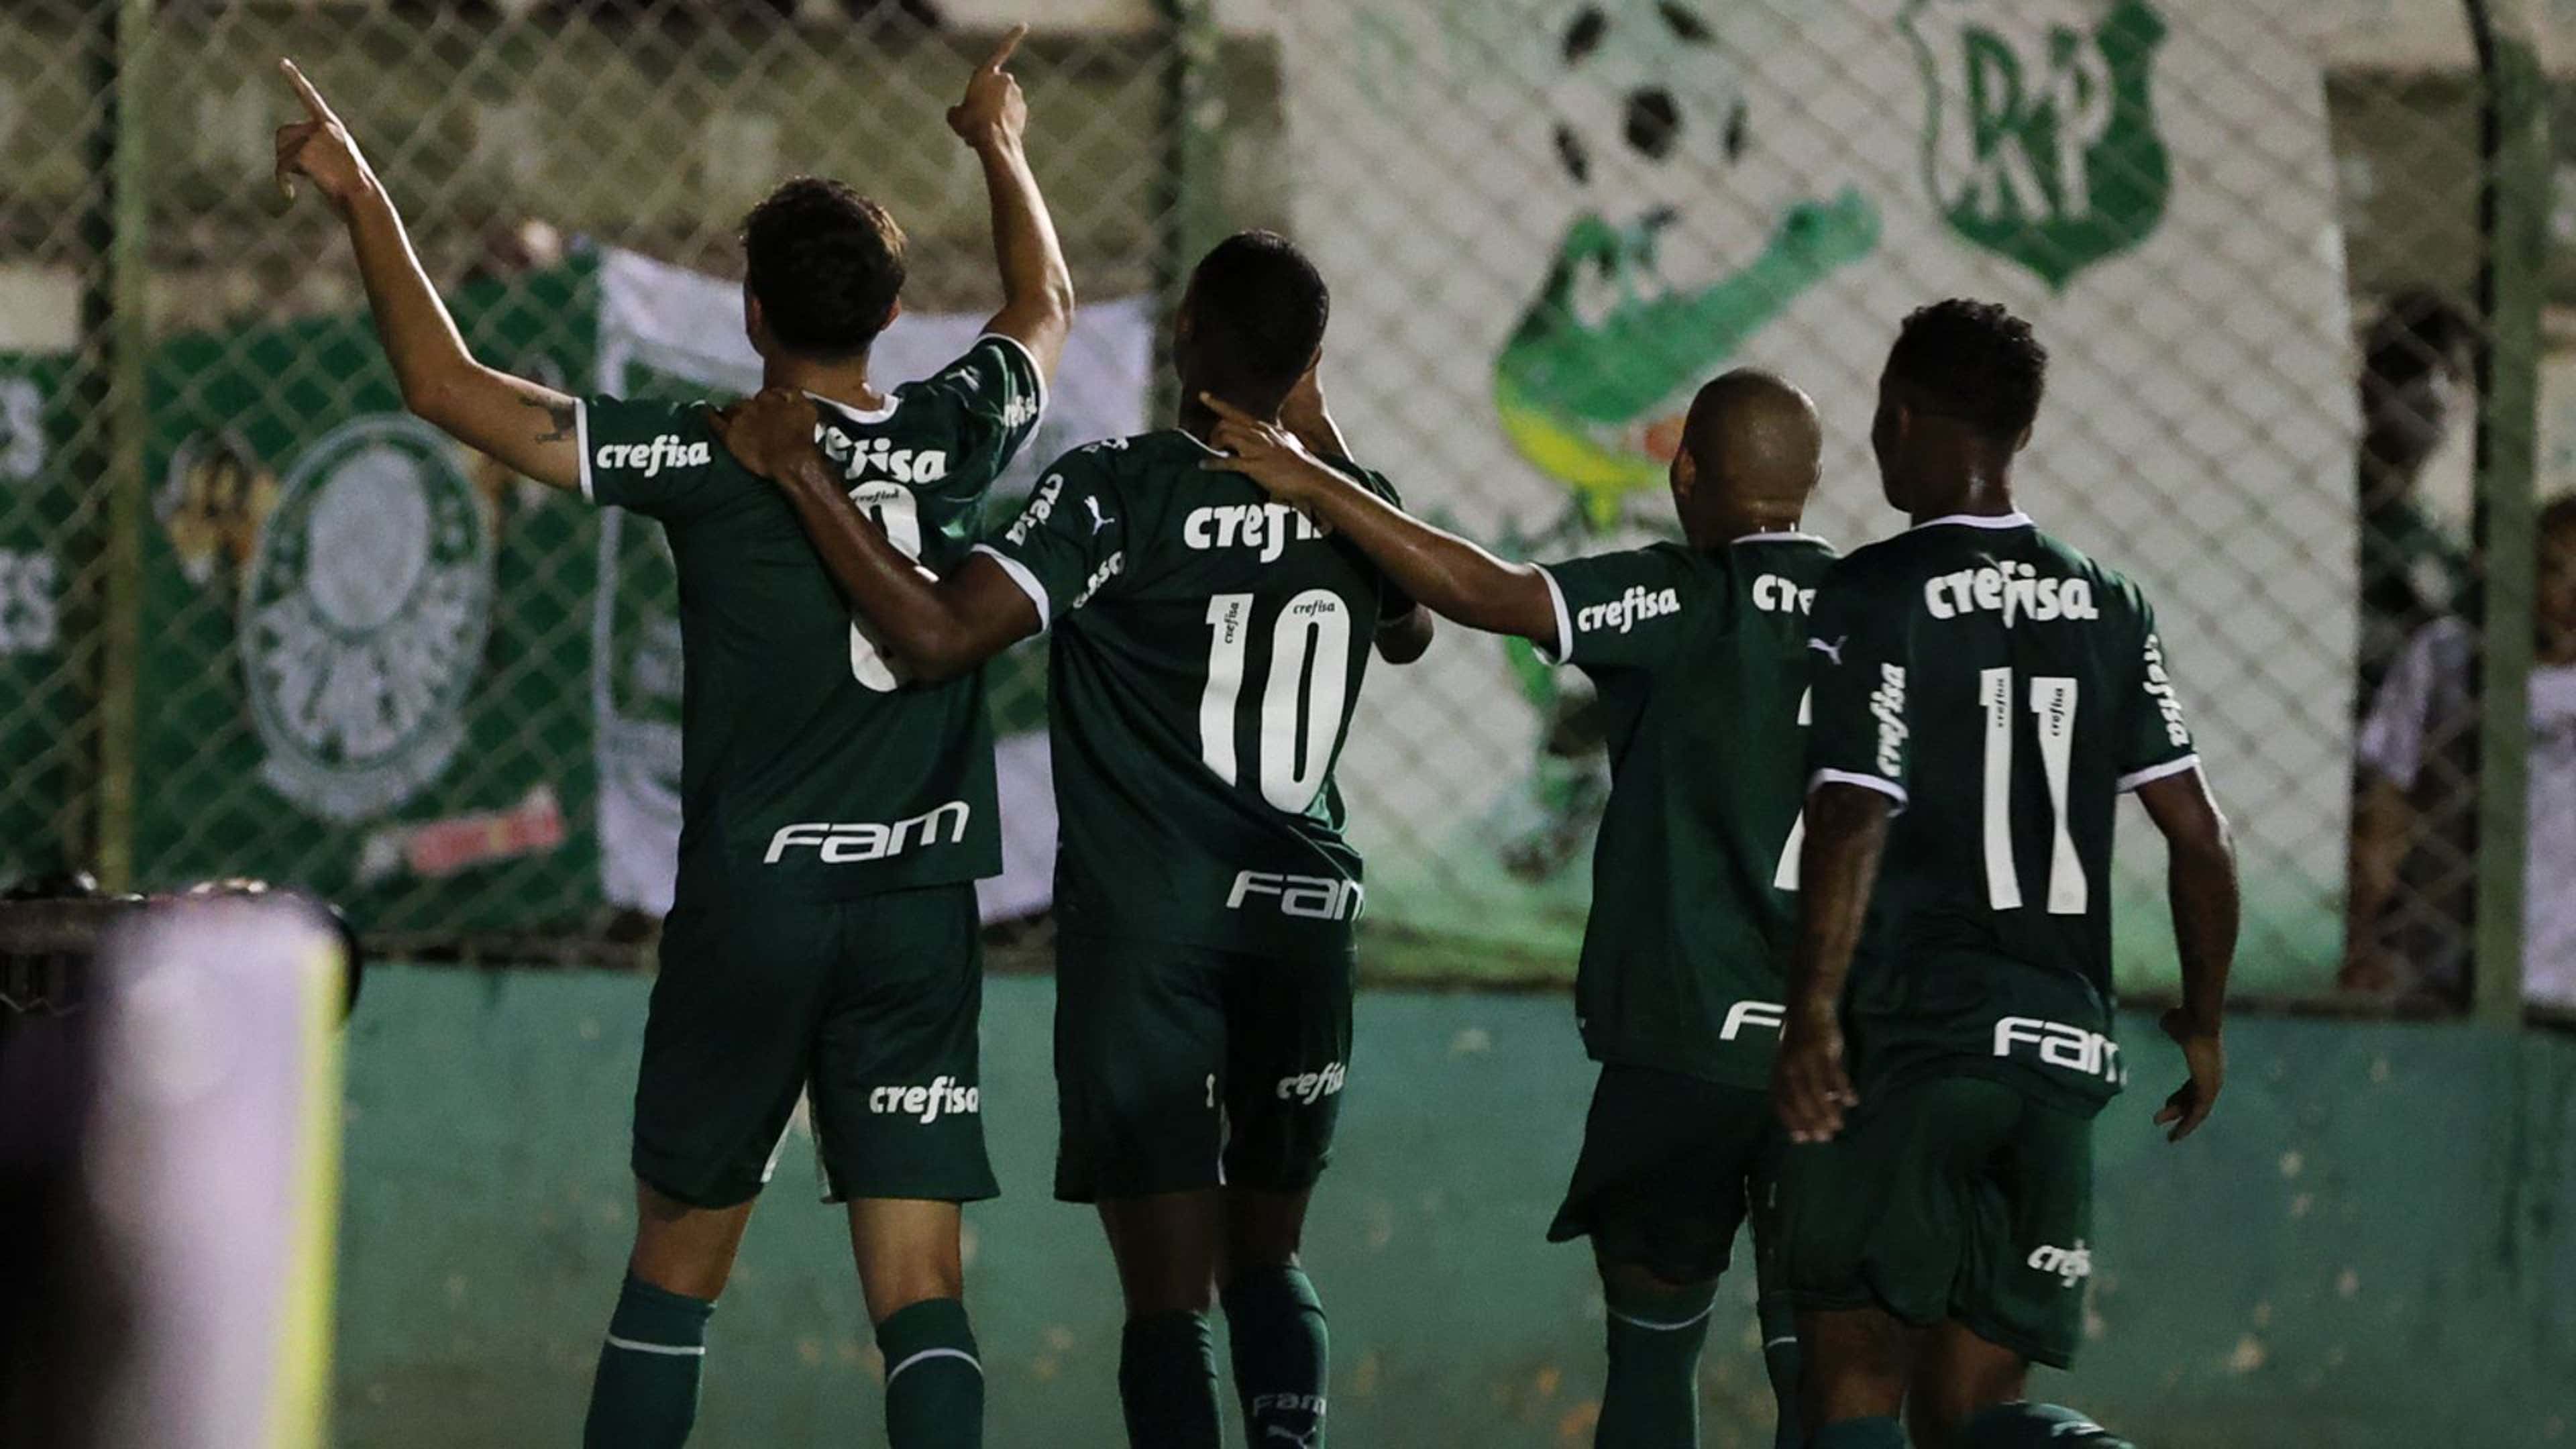 AO VIVO E GRÁTIS: Palmeiras estreia na Libertadores Sub-20